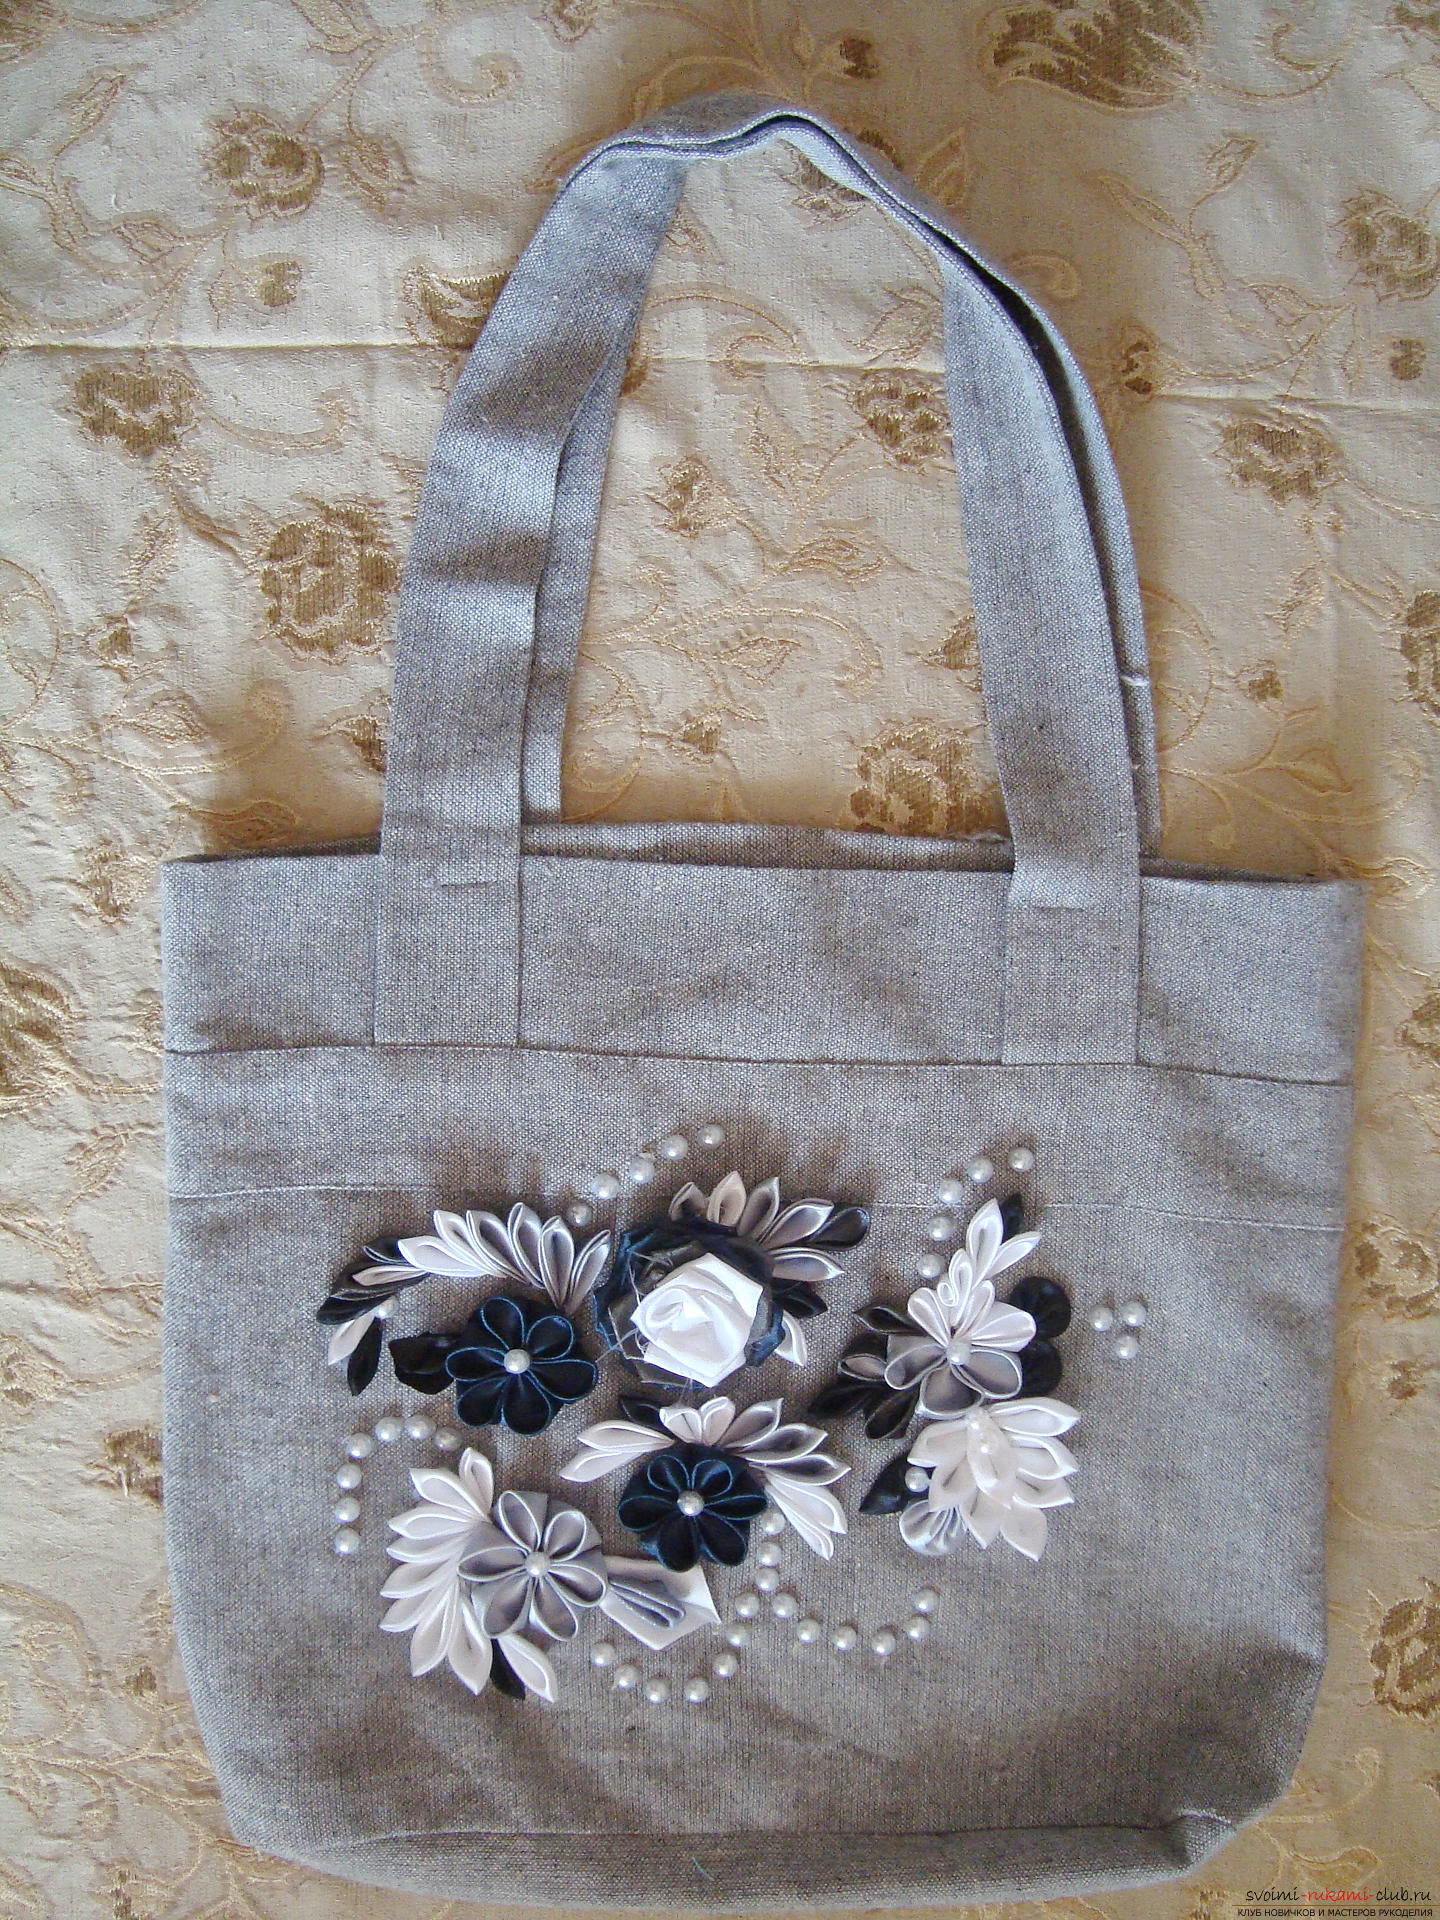 Фото к руководству по созданию сумки с цветами канзаши. Фото №1